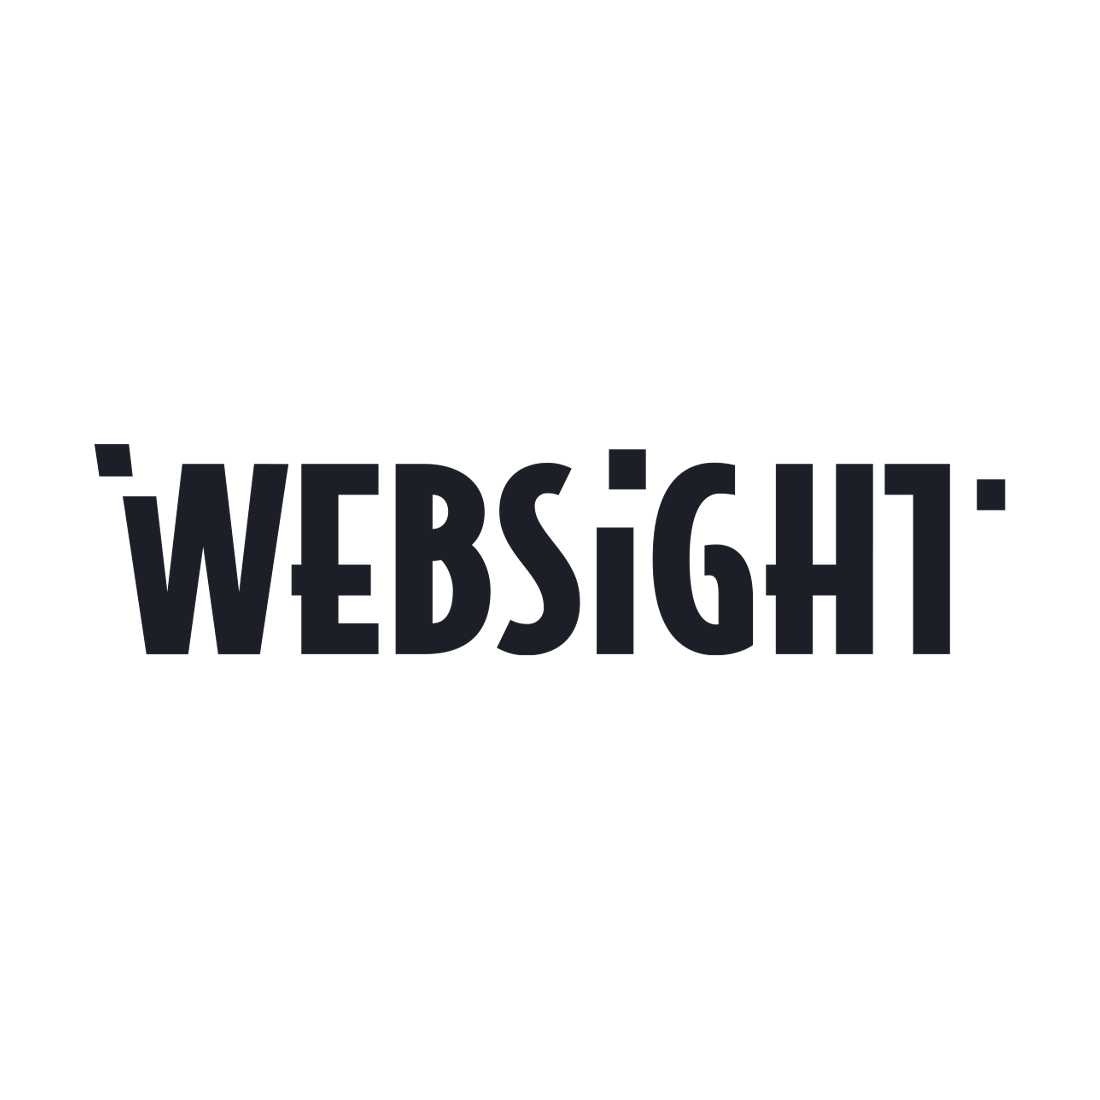 WebSight For Web Solutions - شركة websight لتصميم المواقع